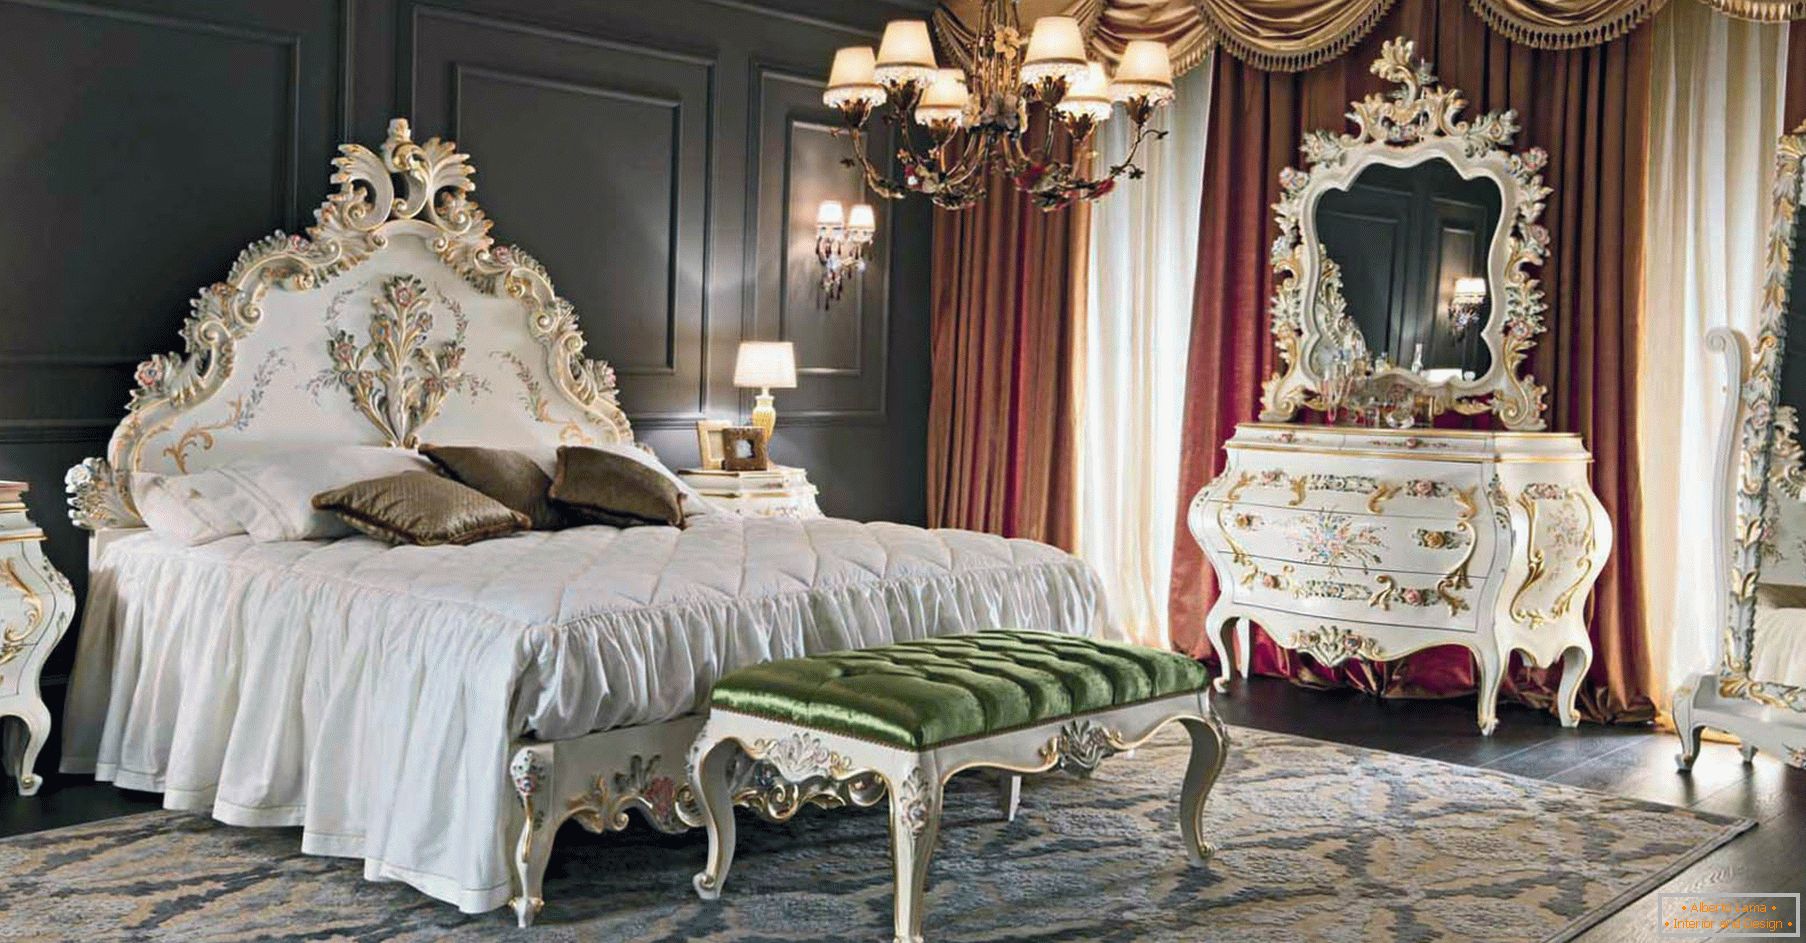 Para decorar el dormitorio, se utilizó un contraste de colores marrón oscuro, dorado, rojo y blanco. Los muebles se seleccionan de acuerdo con el estilo del barroco.